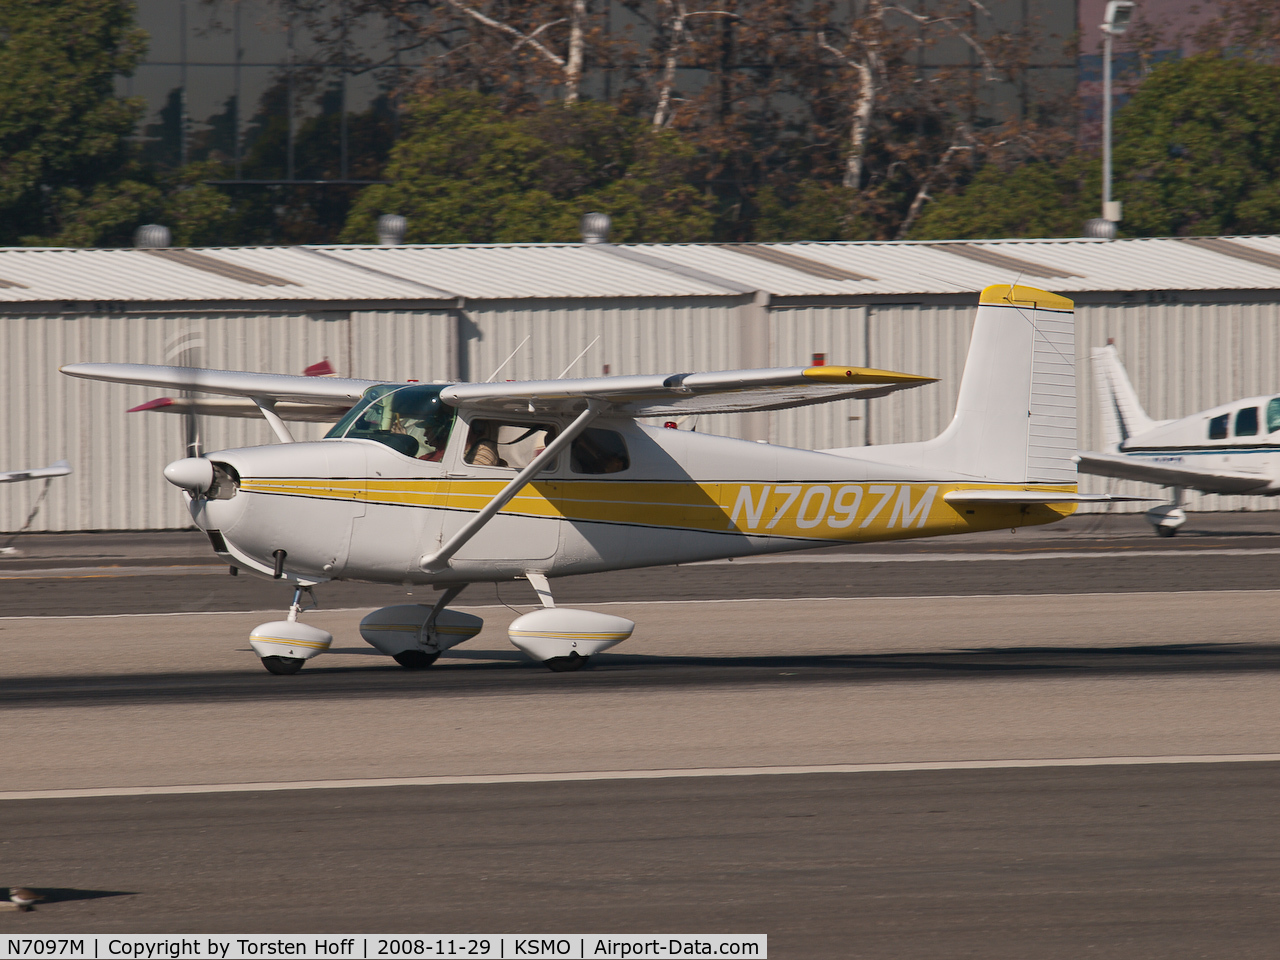 N7097M, 1958 Cessna 175 Skylark C/N 55397, N7097M departing from RWY 21